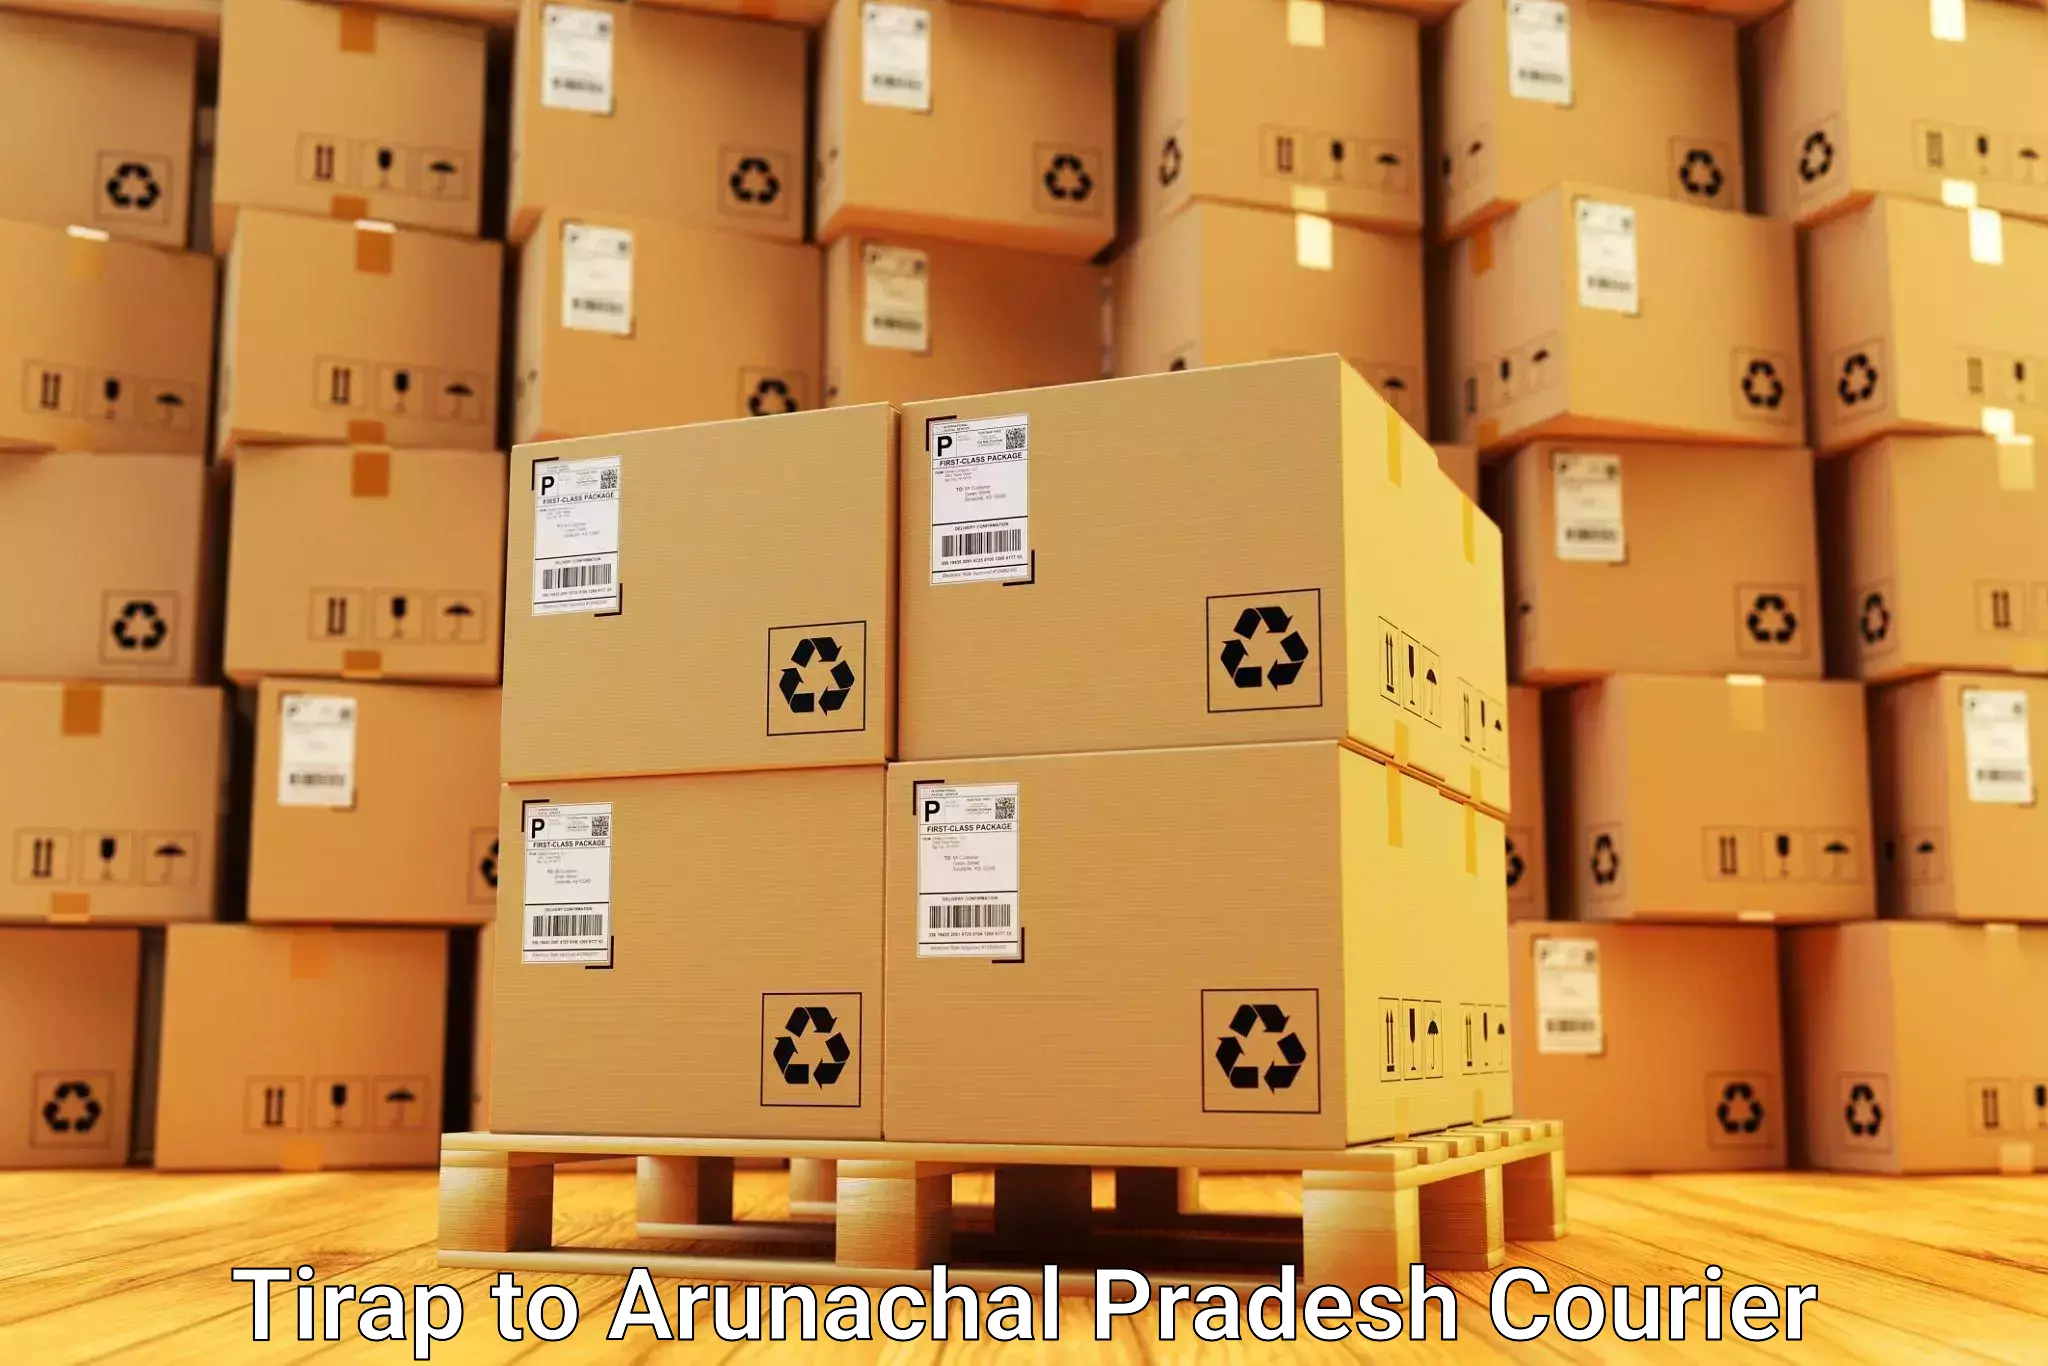 Furniture moving assistance Tirap to Arunachal Pradesh